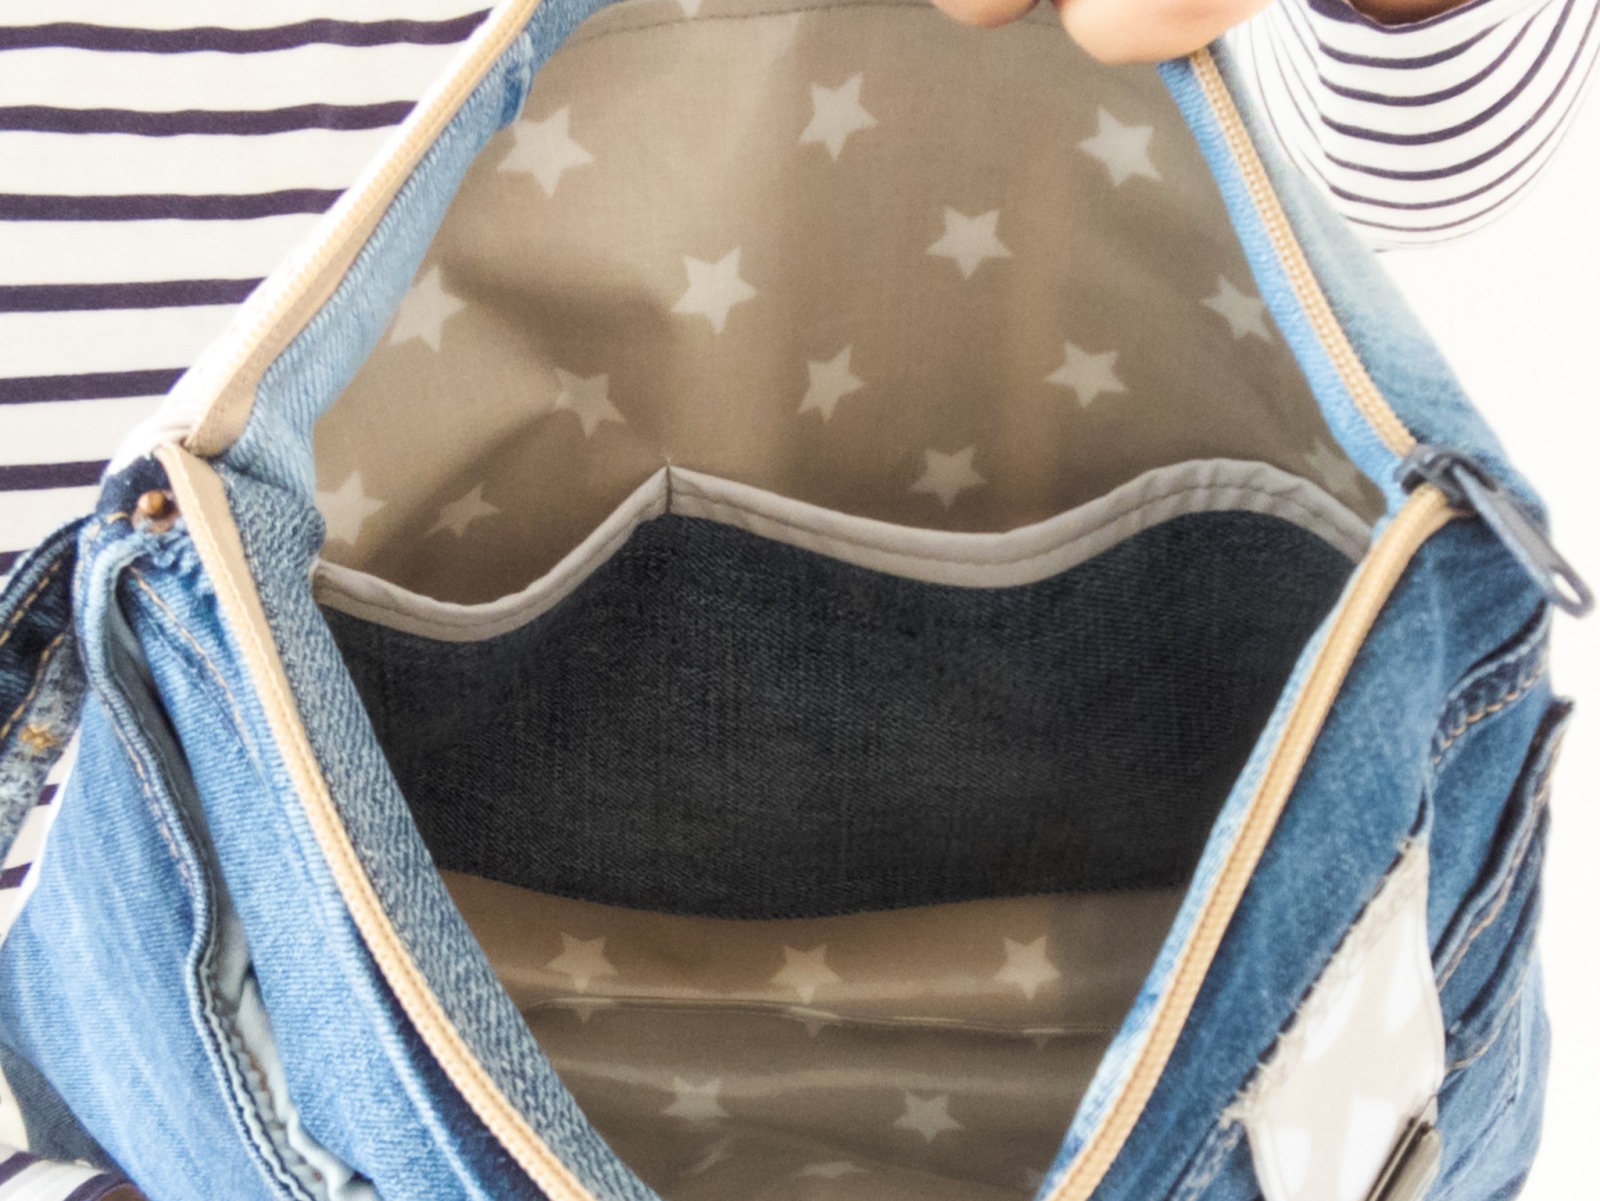 Maxi-Kulturtasche | Jeans | blau | Baumwollhose | creme | Taschen außen | Wachstuch innen | Sterne